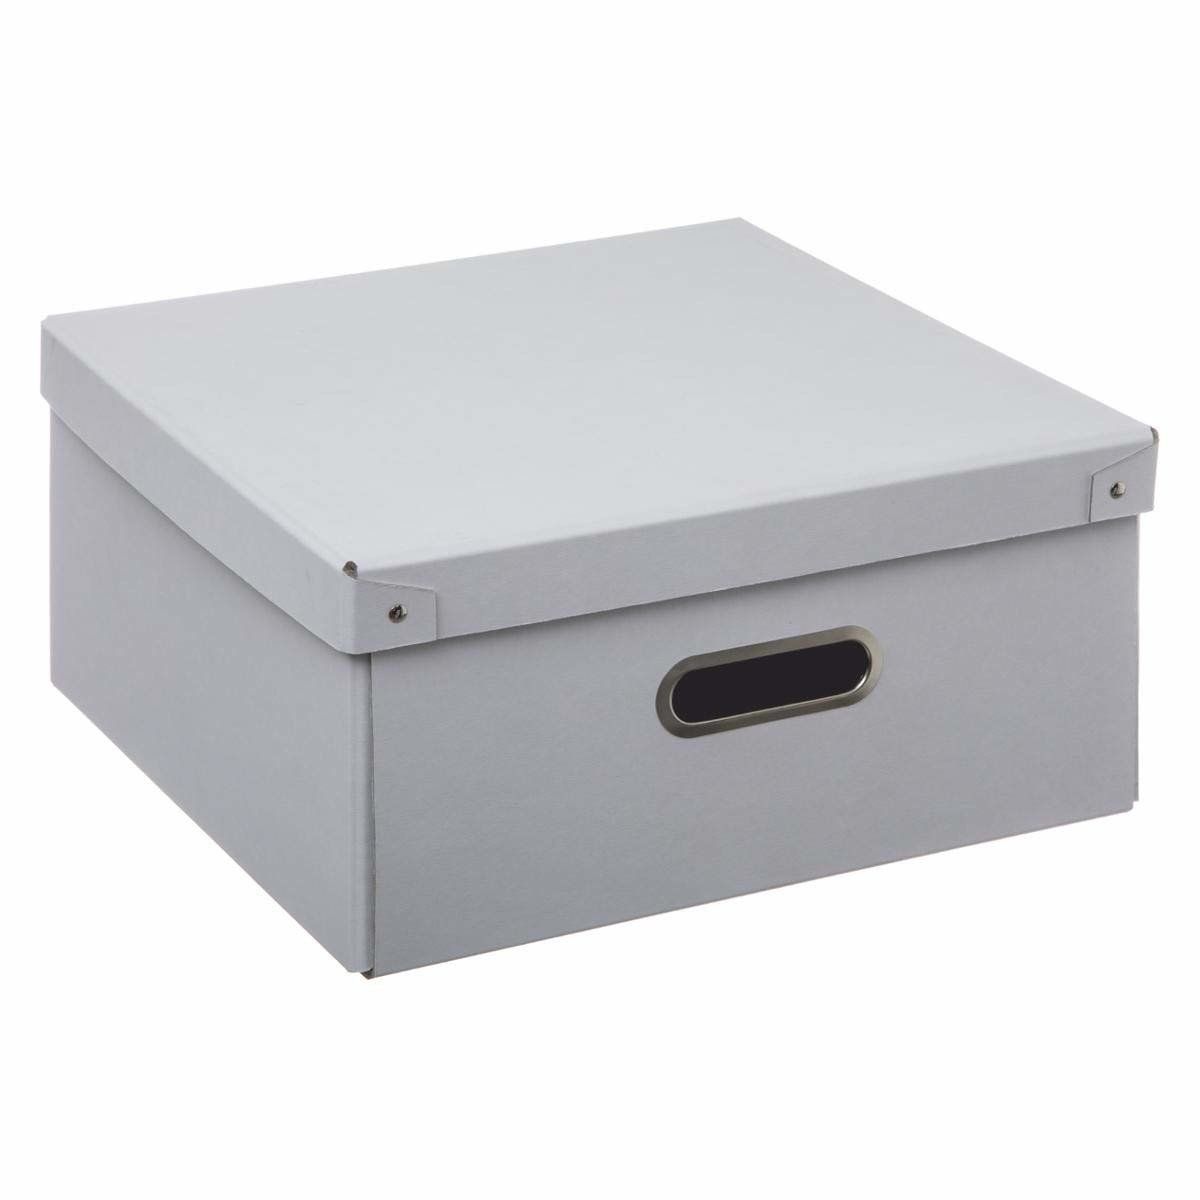 5five Simple Smart Kartonová krabice s víkem, skladovací krabička, 31 x 15 cm, bílá - EMAKO.CZ s.r.o.